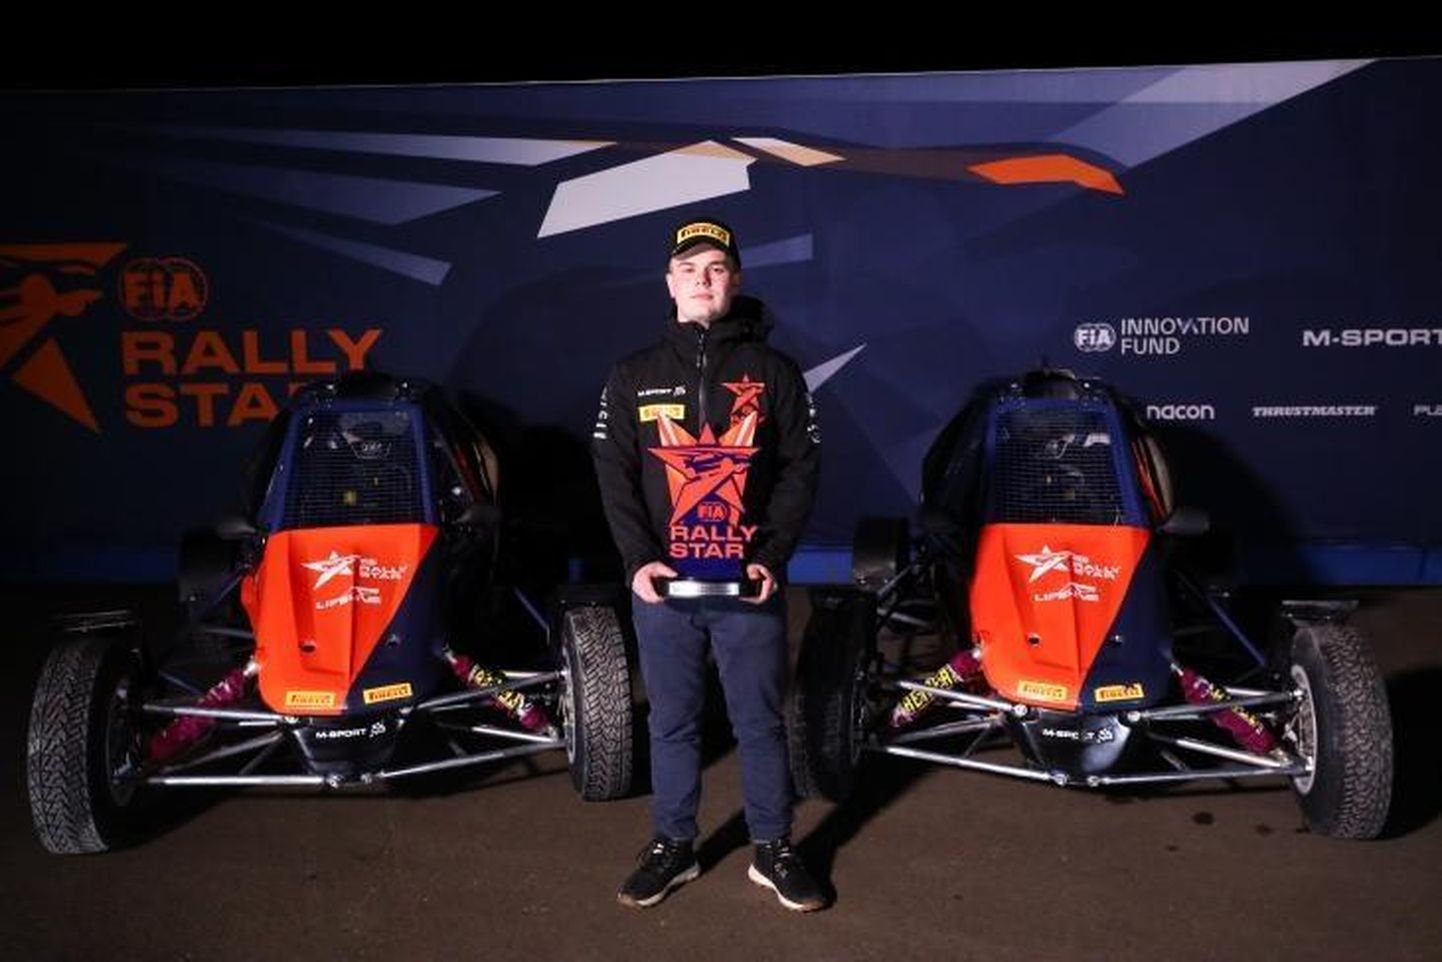 FIA Rally Star Euroopa talendiprogrammi võitjaks kuulutatud Romet Jürgenson pääseb juba järgmisel aastal avastama maailma rallispordi võlu ja valu.